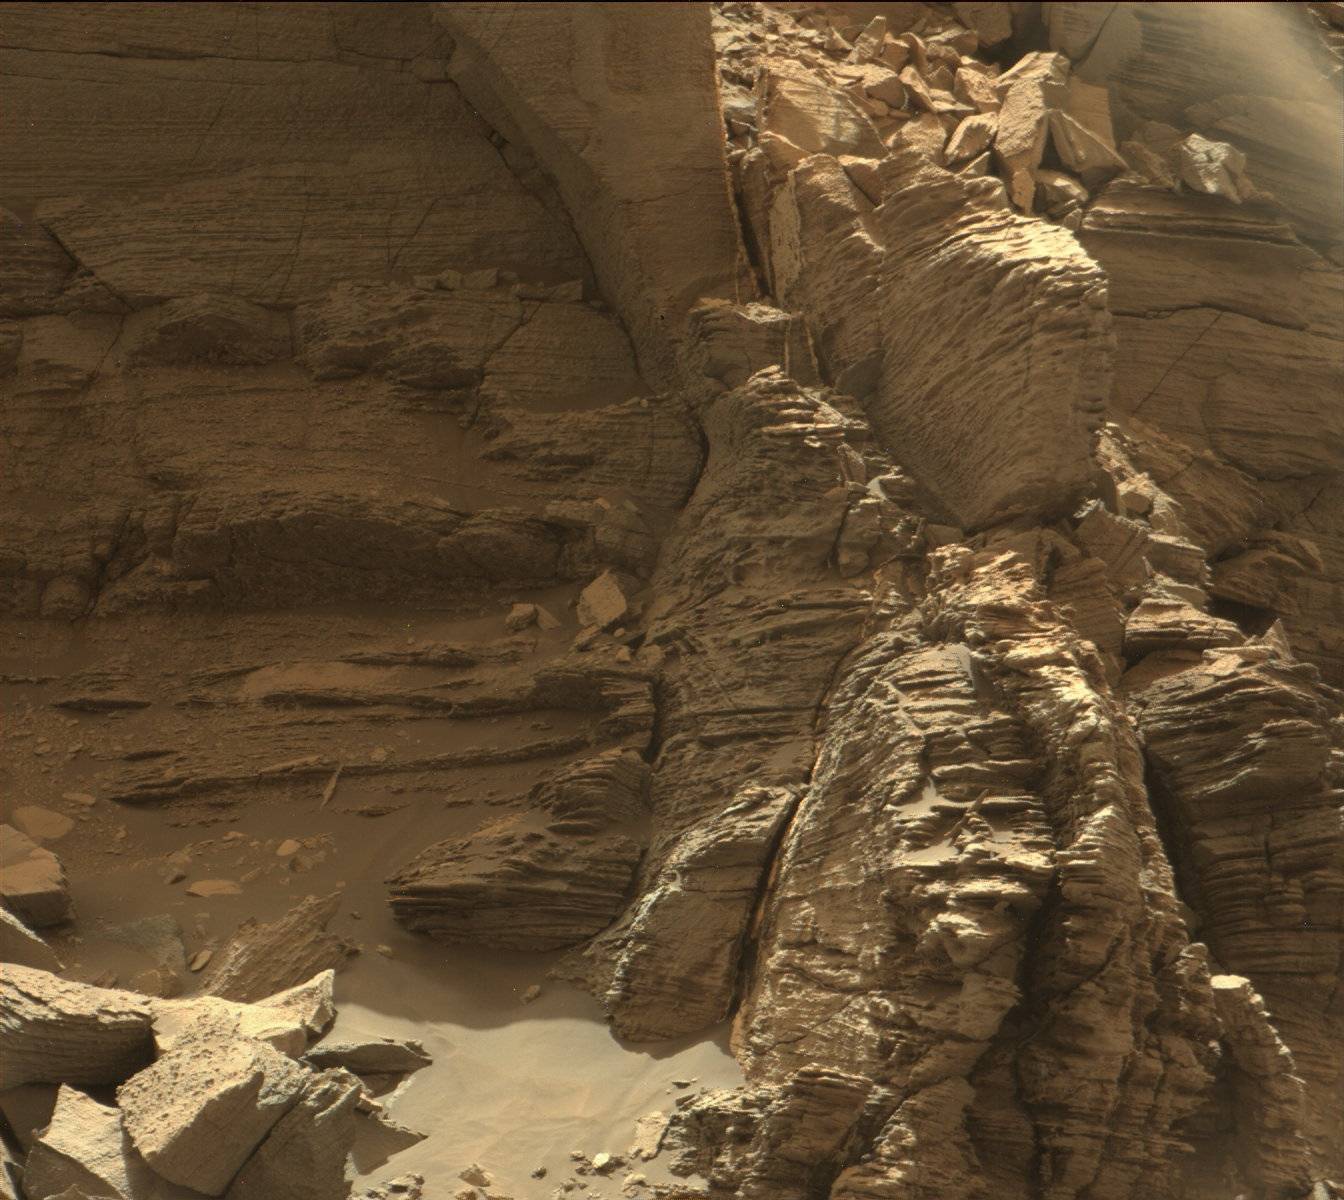 НАСА Curiosity марсохода используется мачта камеры или Mastcam, чтобы захватить этот образ обнажения с тонко слоистыми породами в регионе «Мюррей Бет» на нижнем эолиде 8 сентября 2016 года Credits : НАСА / Лаборатория реактивного движения-Калтех / MSSS. 